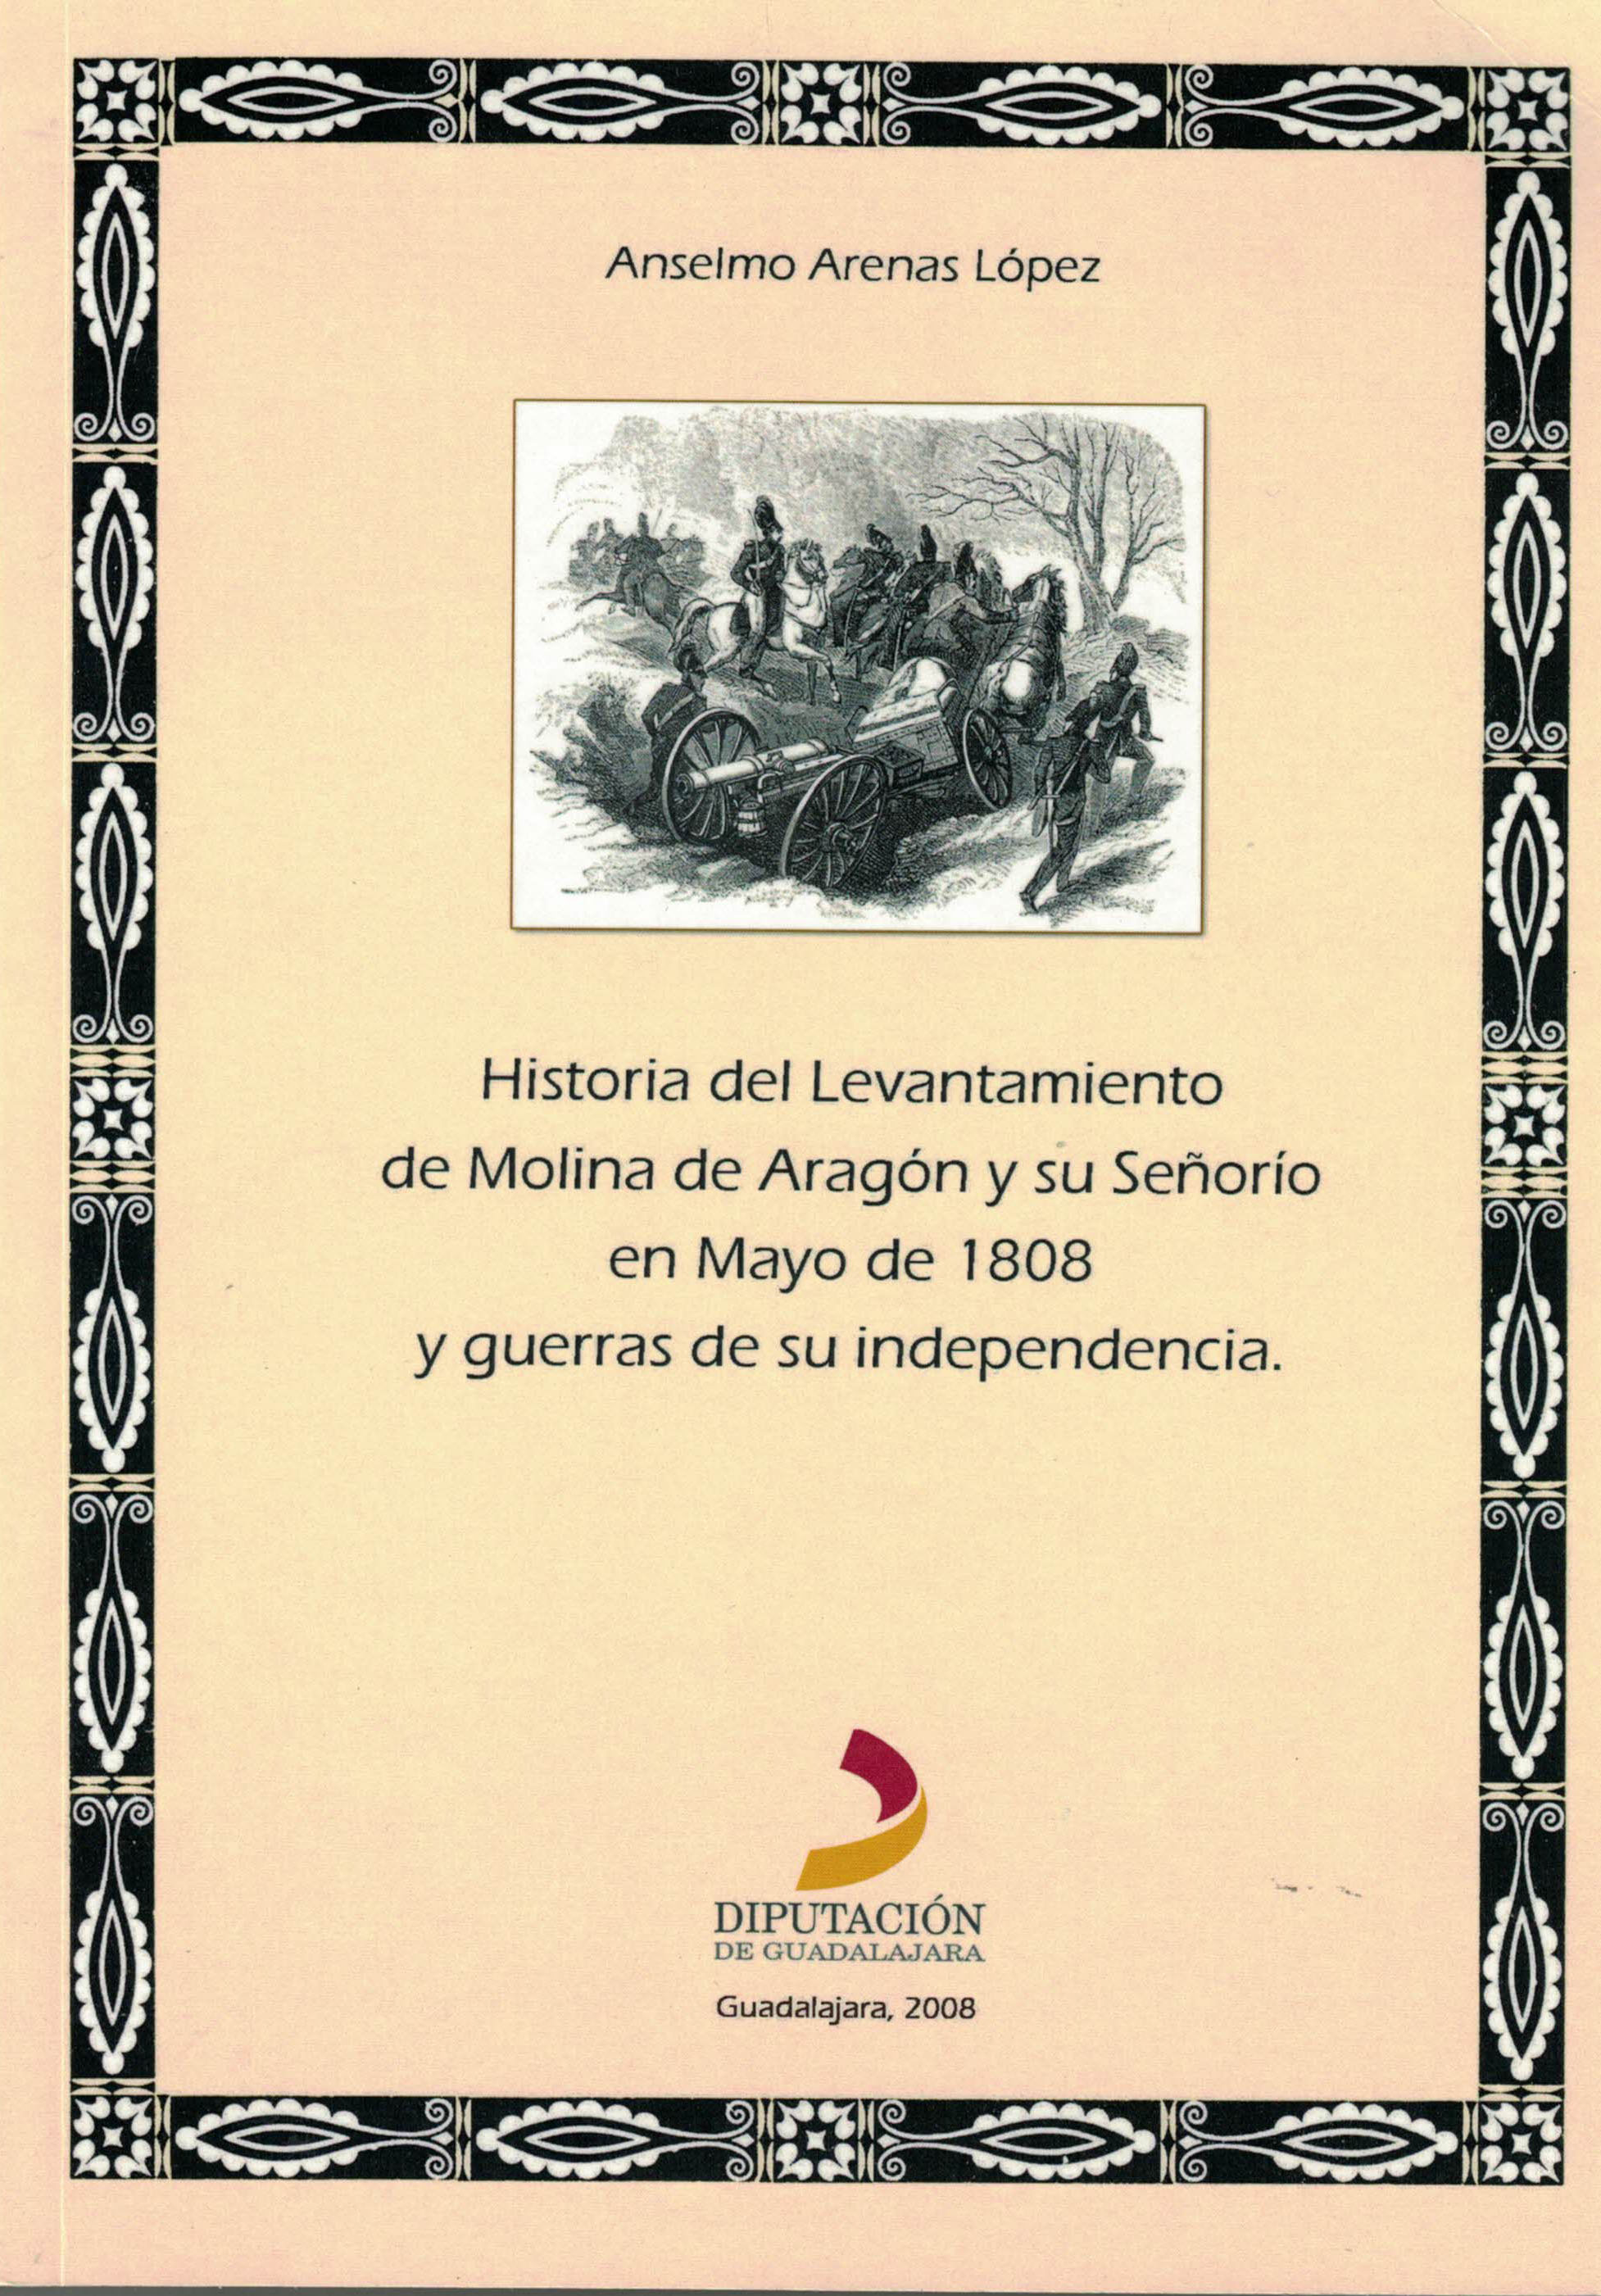 Historia del Levantamiento de Molina de Aragón y su señorío en Mayo de 1808 y guerras de su independencia